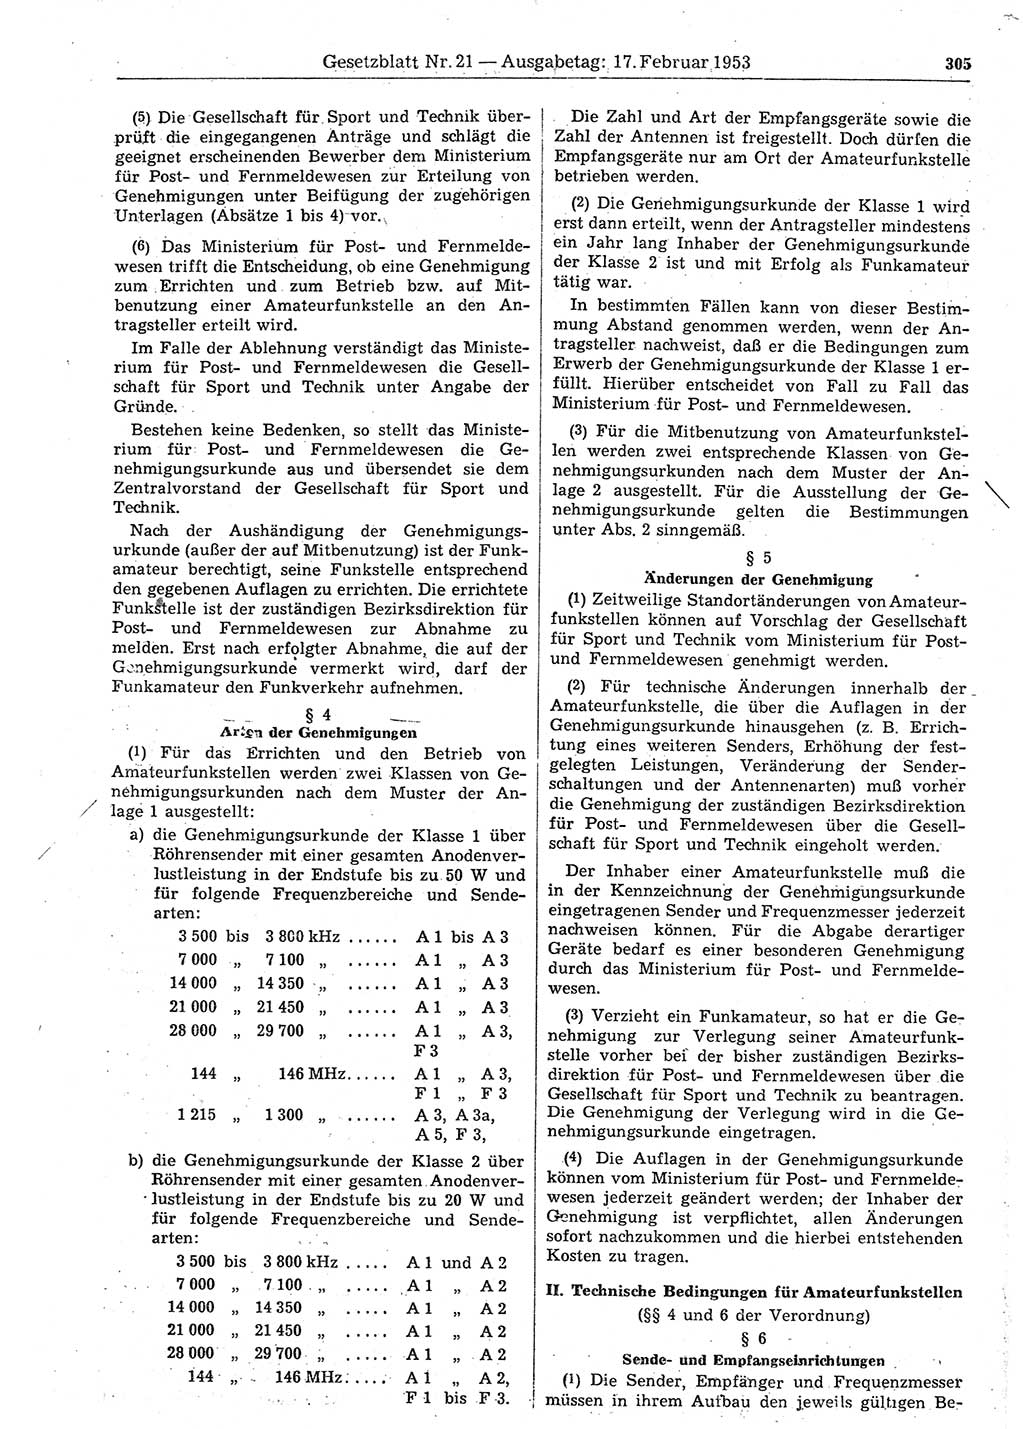 Gesetzblatt (GBl.) der Deutschen Demokratischen Republik (DDR) 1953, Seite 305 (GBl. DDR 1953, S. 305)